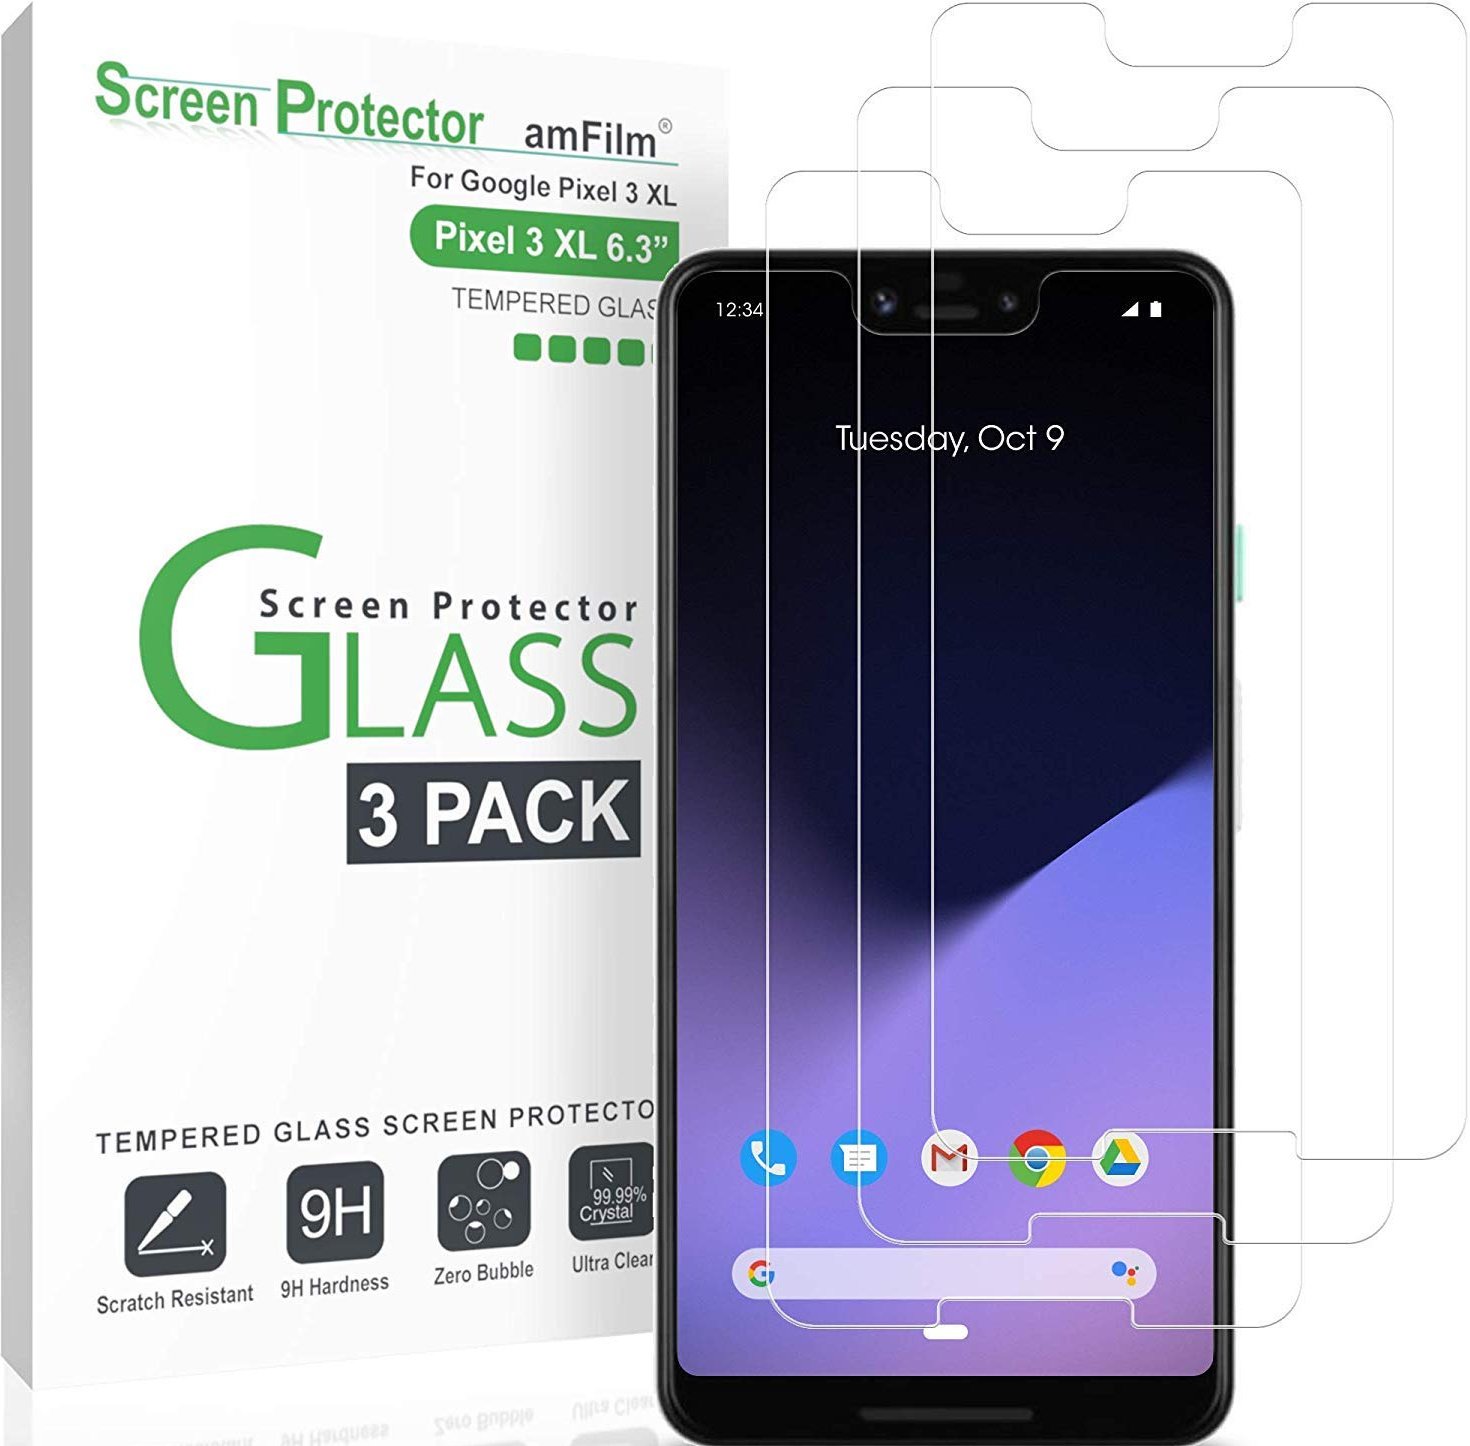 Pixel 3 XL screen protector